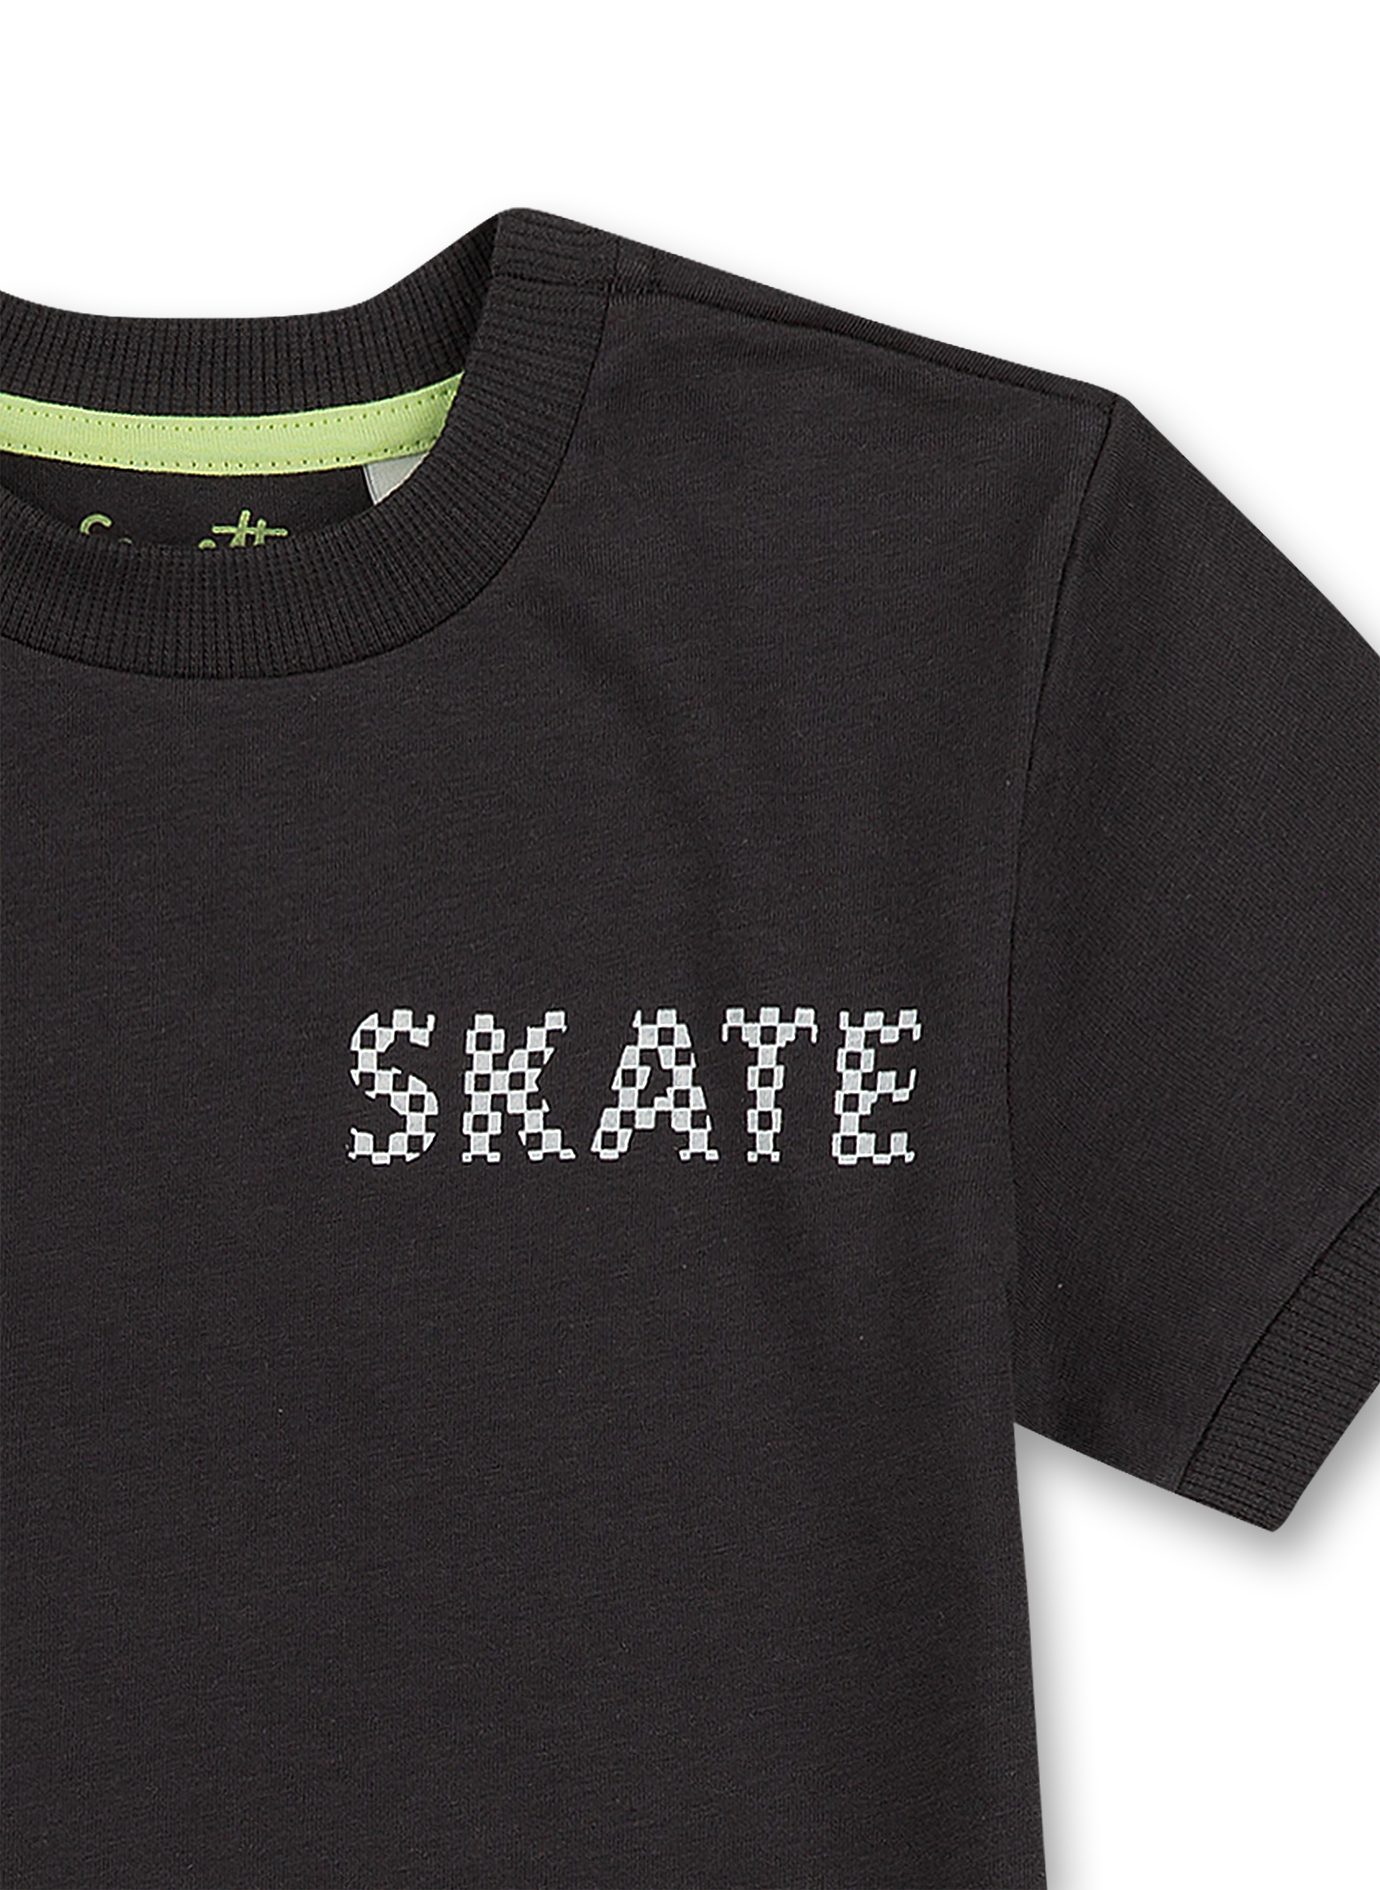 Jungen T-Shirt Dunkelgrau Skate